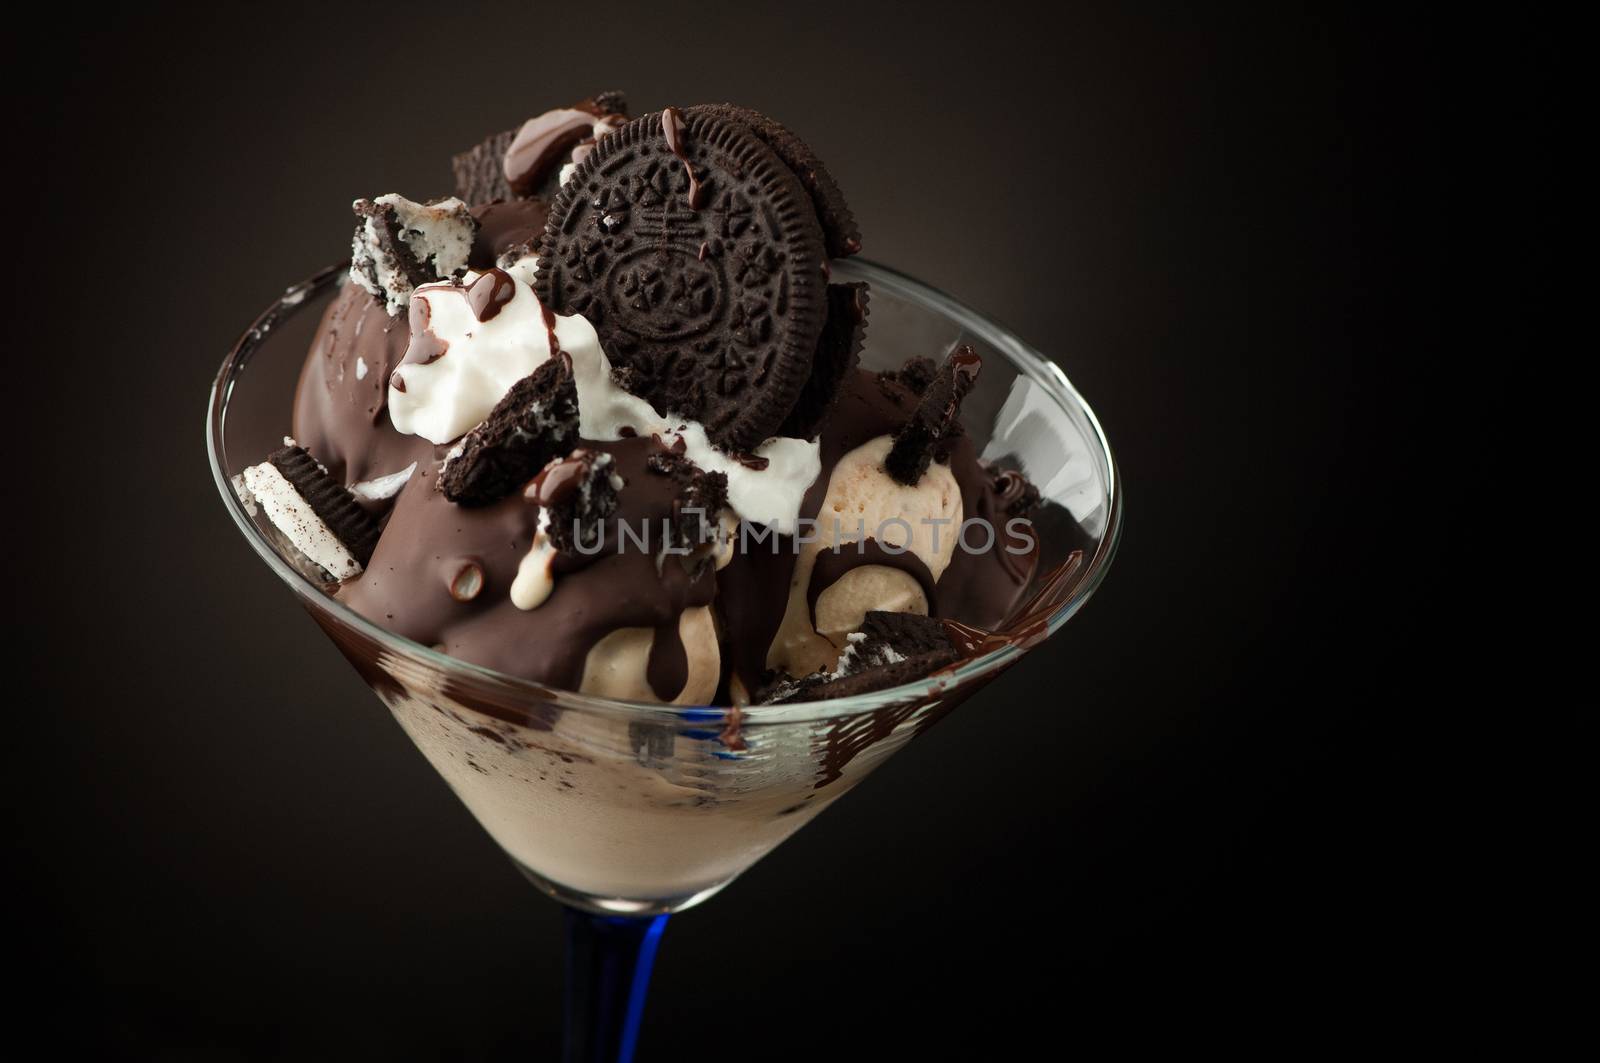 Ice cream in a vase on a dark background